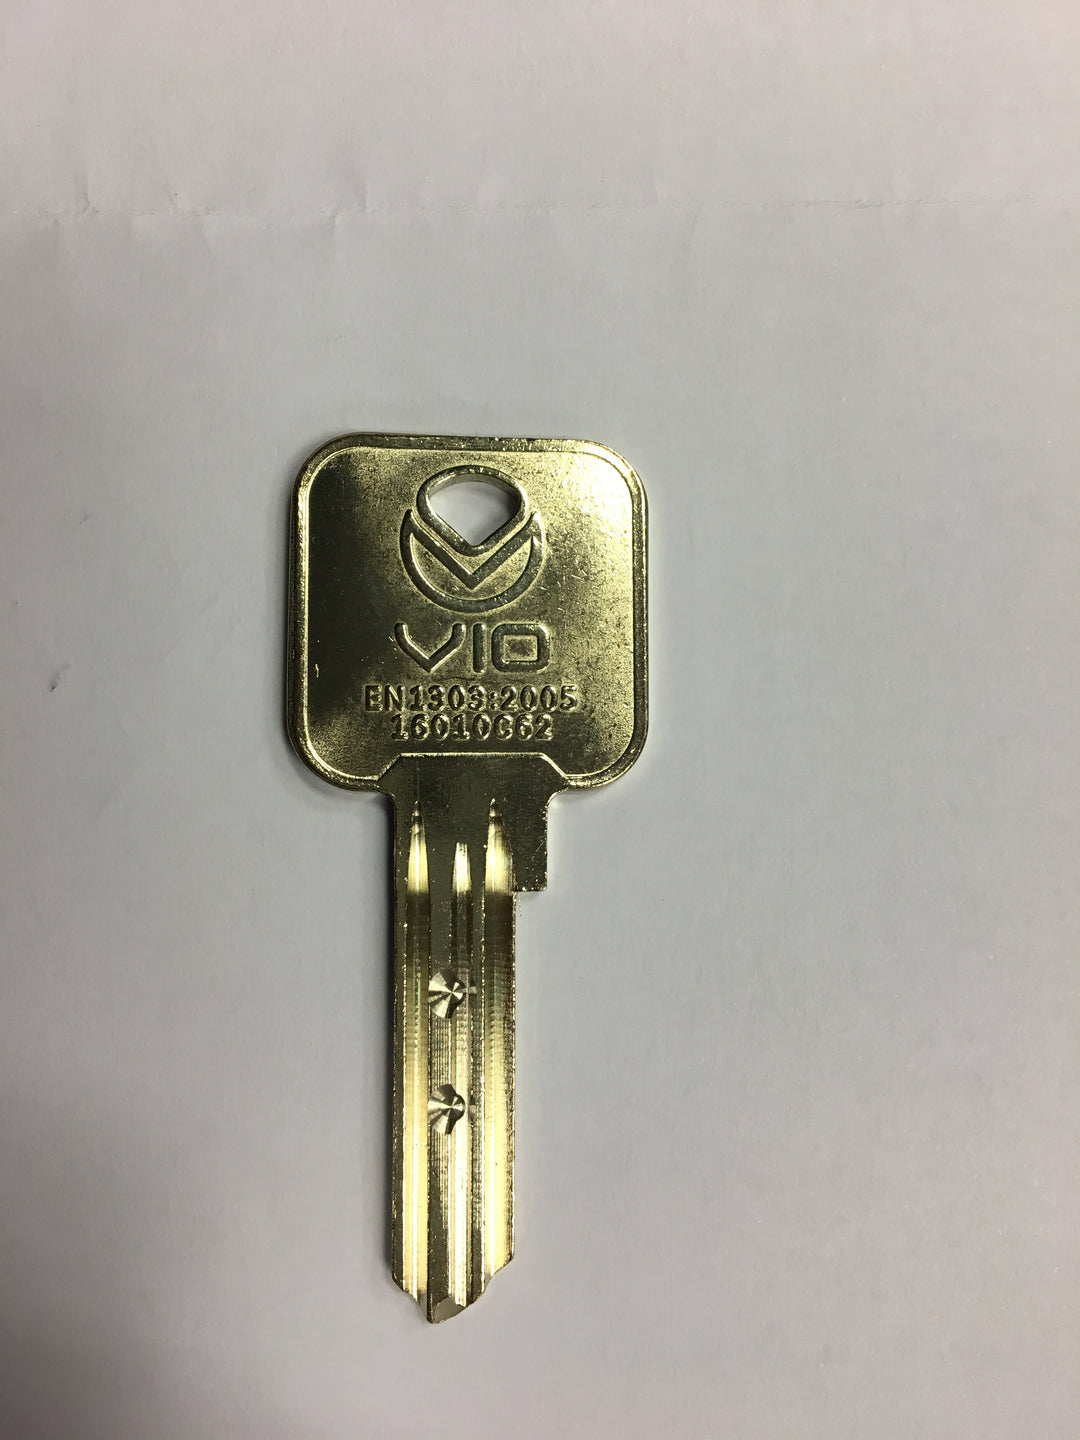 Eurospec mp10 key